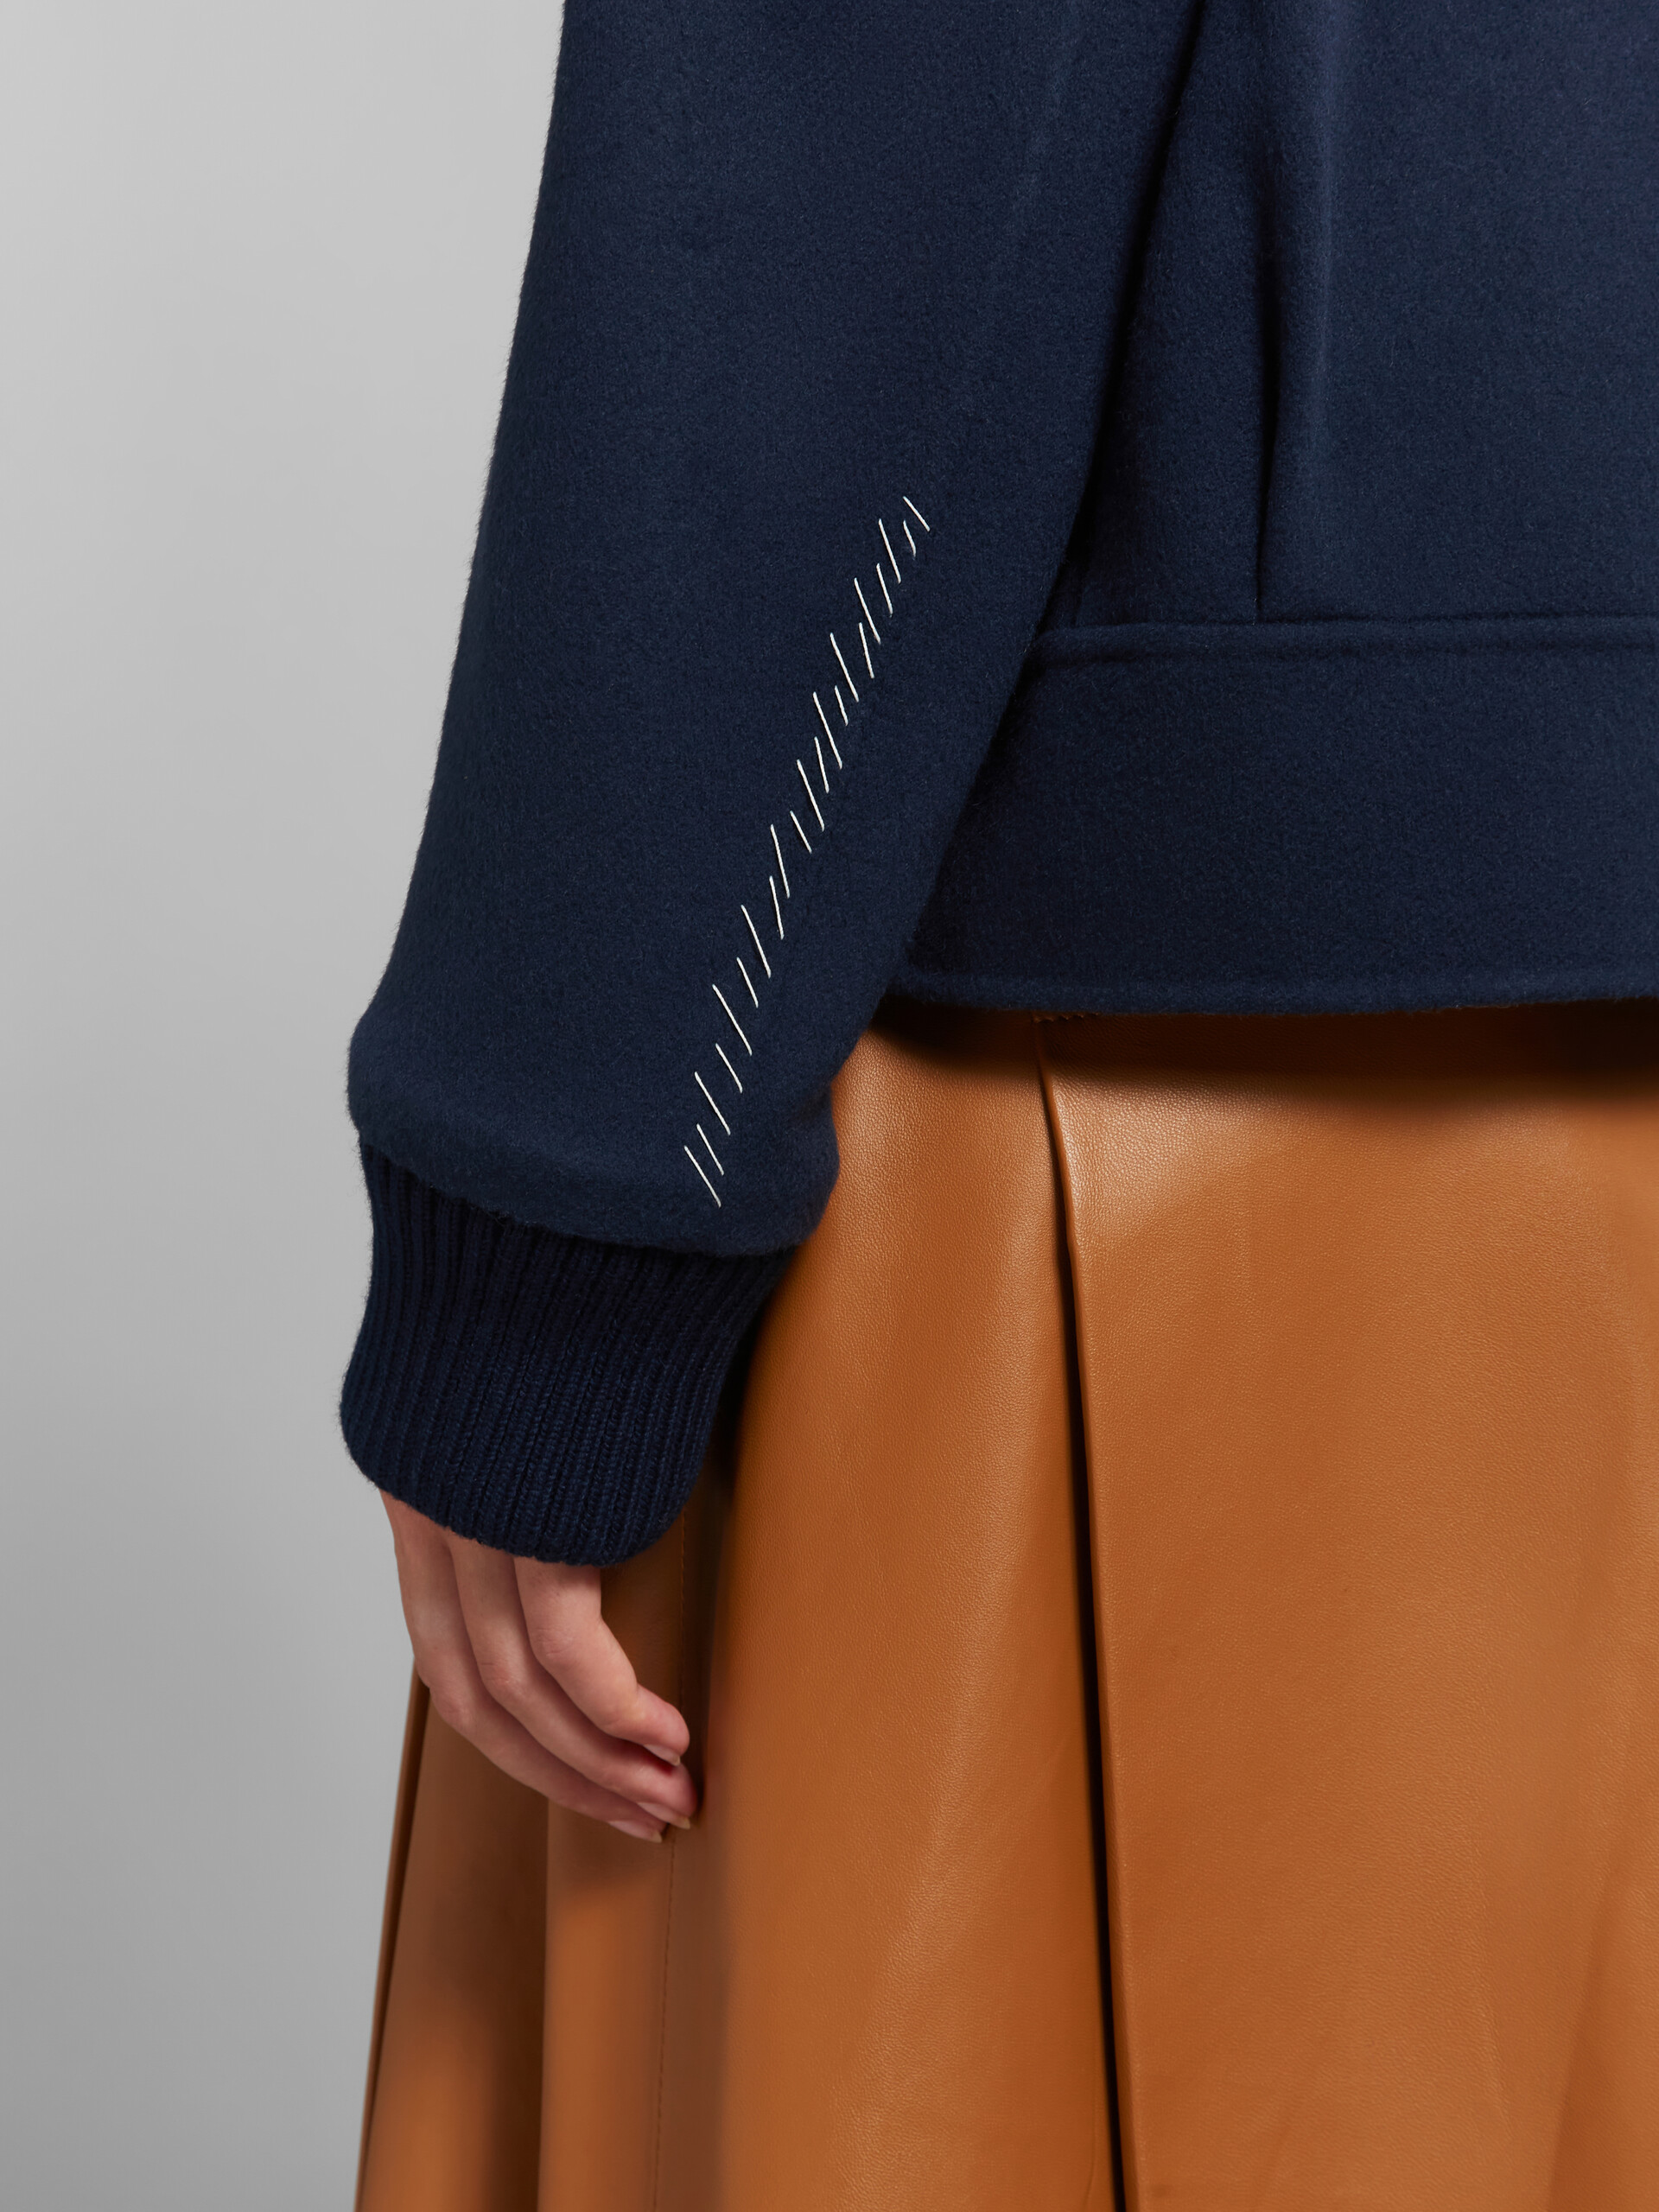 Giacca in lana e cashmere blu scuro con bordi in maglia - Giacche - Image 5